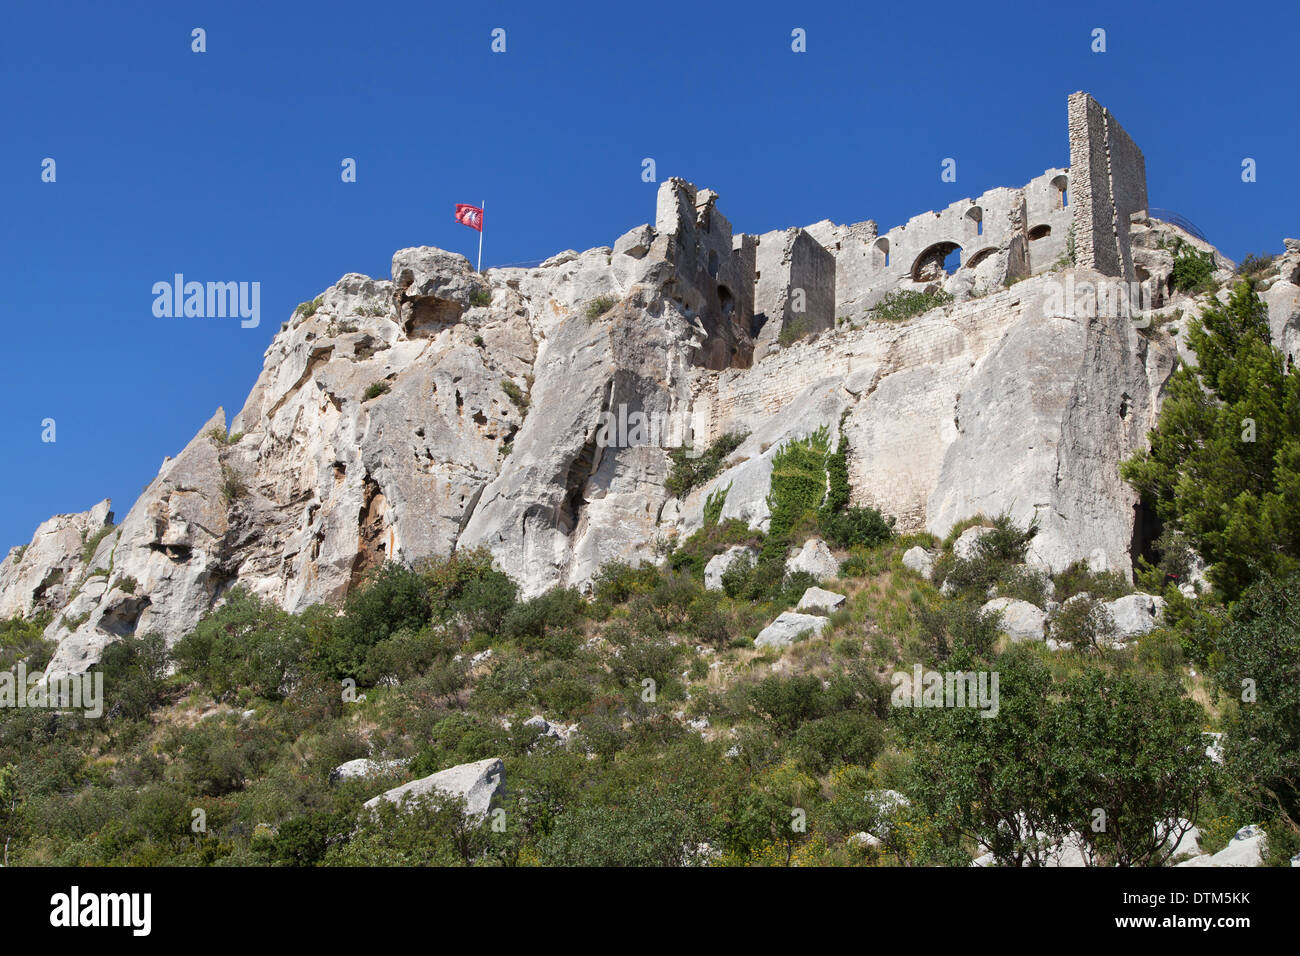 Ruins of Chateau Les Baux de Provence, France. Stock Photo